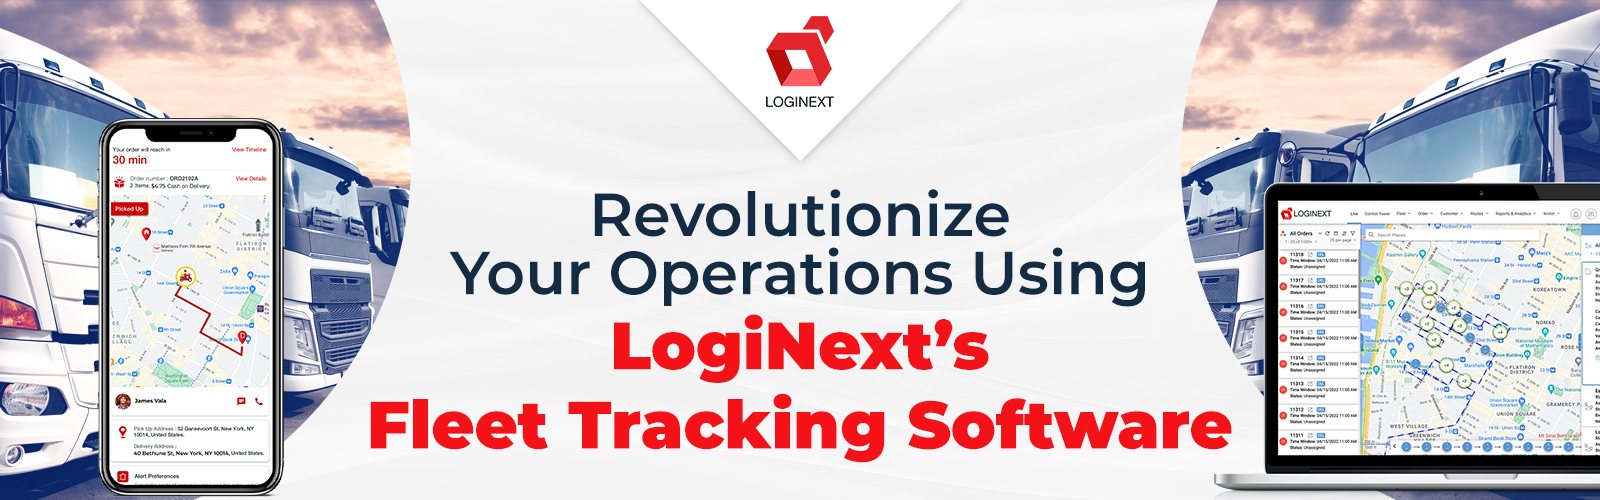 LogiNext'in Filo Takip Yazılımını Kullanarak Operasyonlarda Devrim Yapın